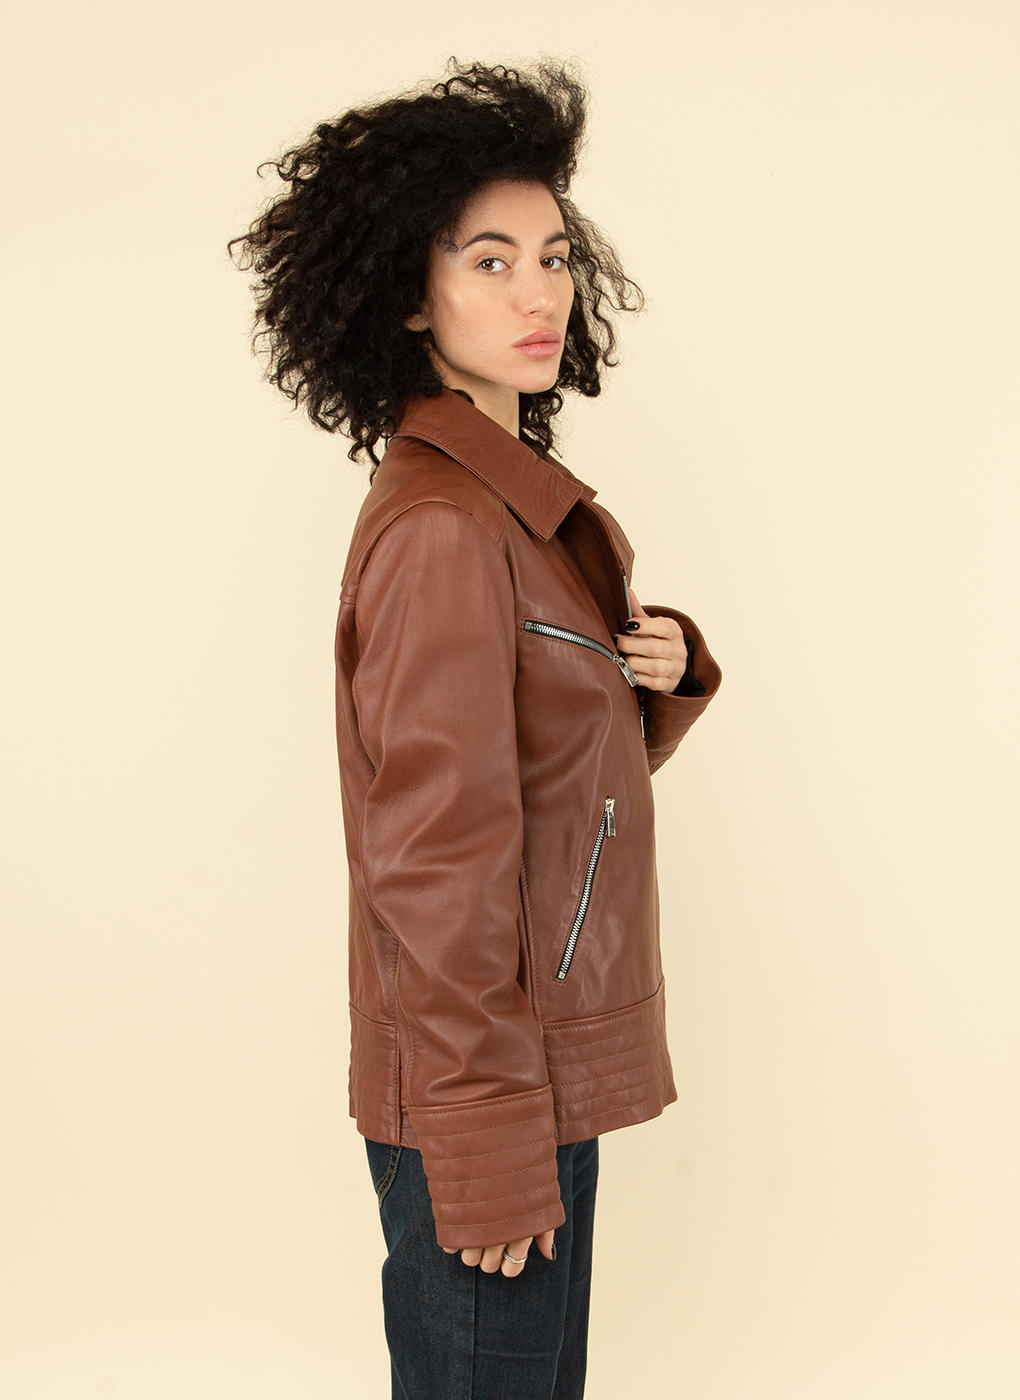 Кожаная куртка женская Каляев 53744 коричневая 58 RU